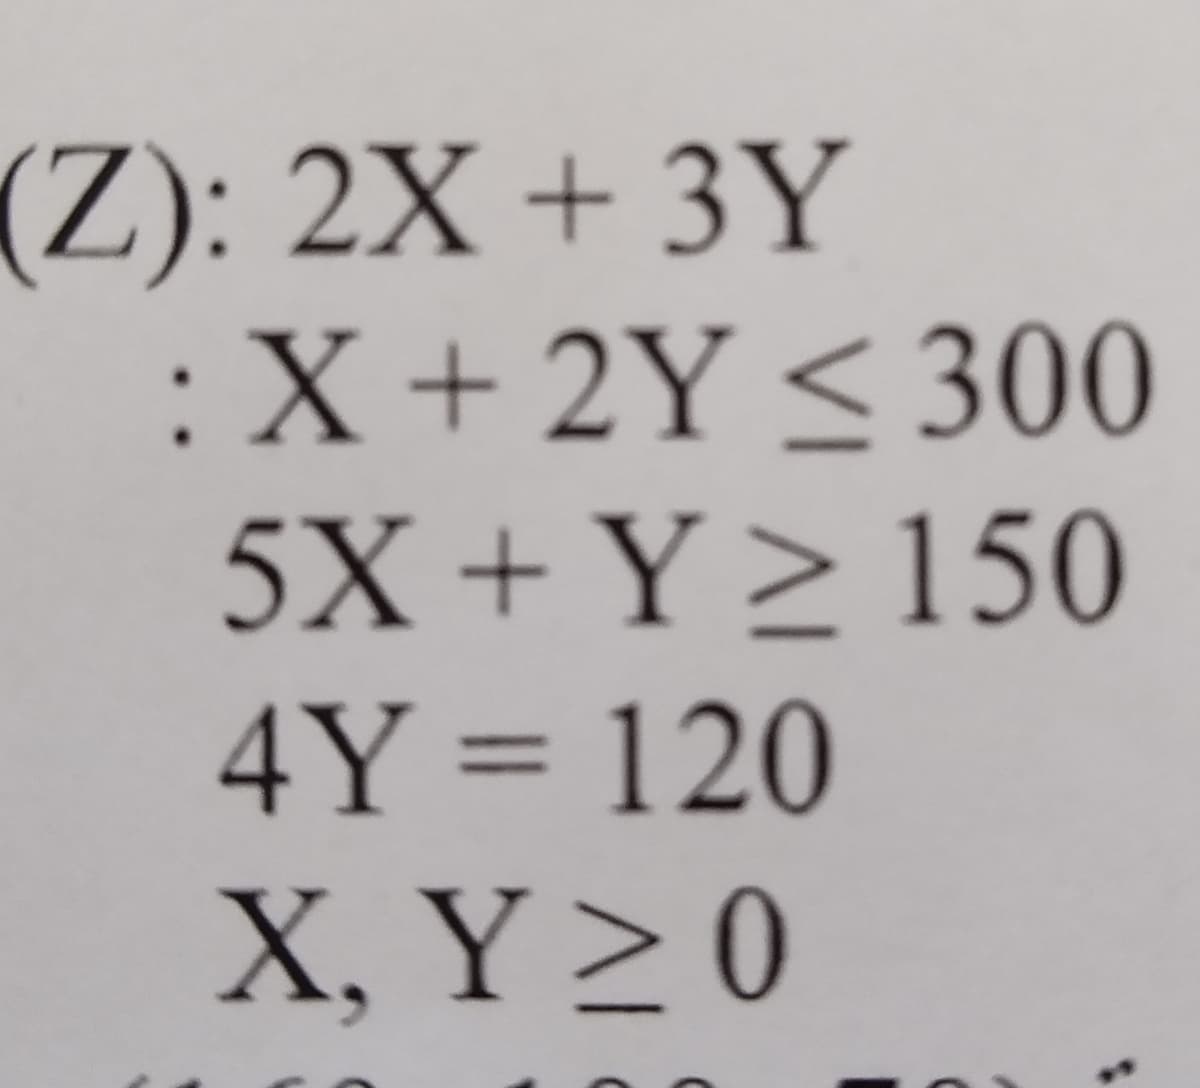 (Z): 2X + 3Y
:X + 2Y ≤ 300
5X + Y ≥ 150
4Y = 120
X. Y≥ 0
C